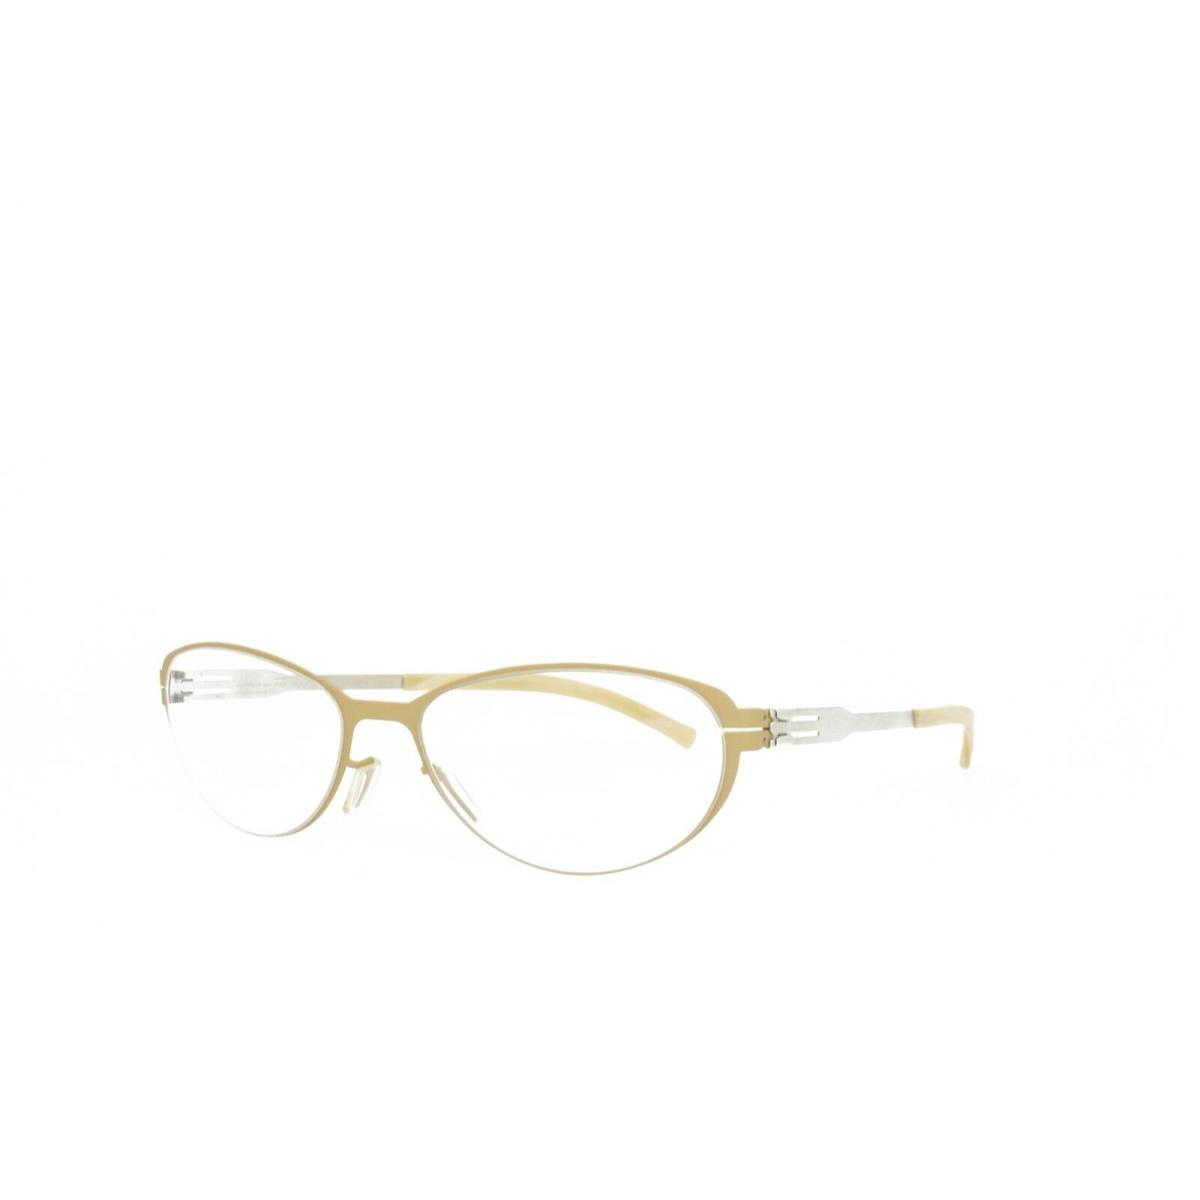 iC Berlin Eyeglasses Rossana P. Desert Pearl 53-18-145